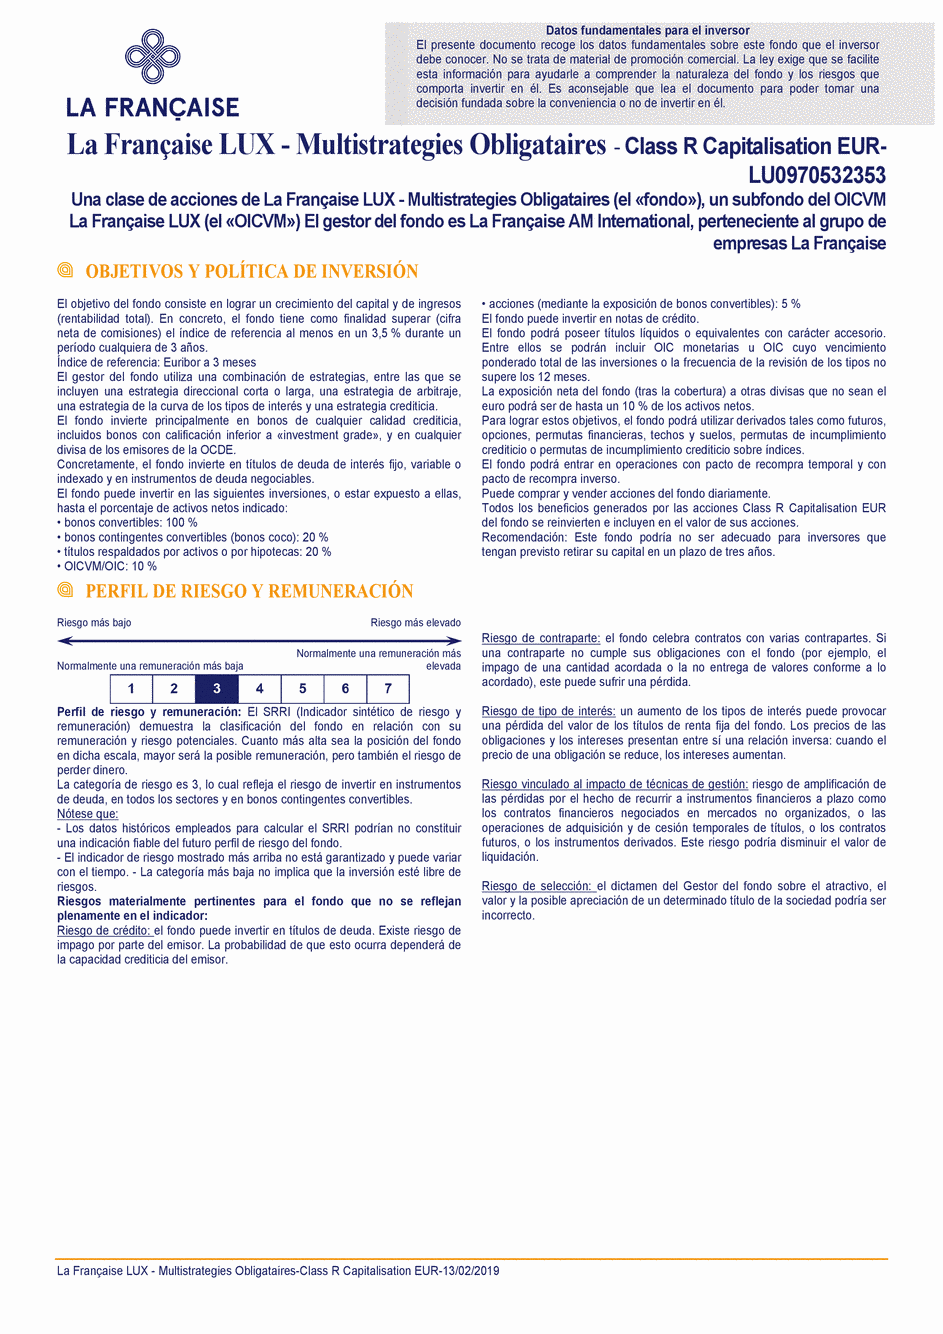 DICI La Française LUX - Multistratégies Obligataires - R (C) EUR - 13/02/2019 - Espagnol